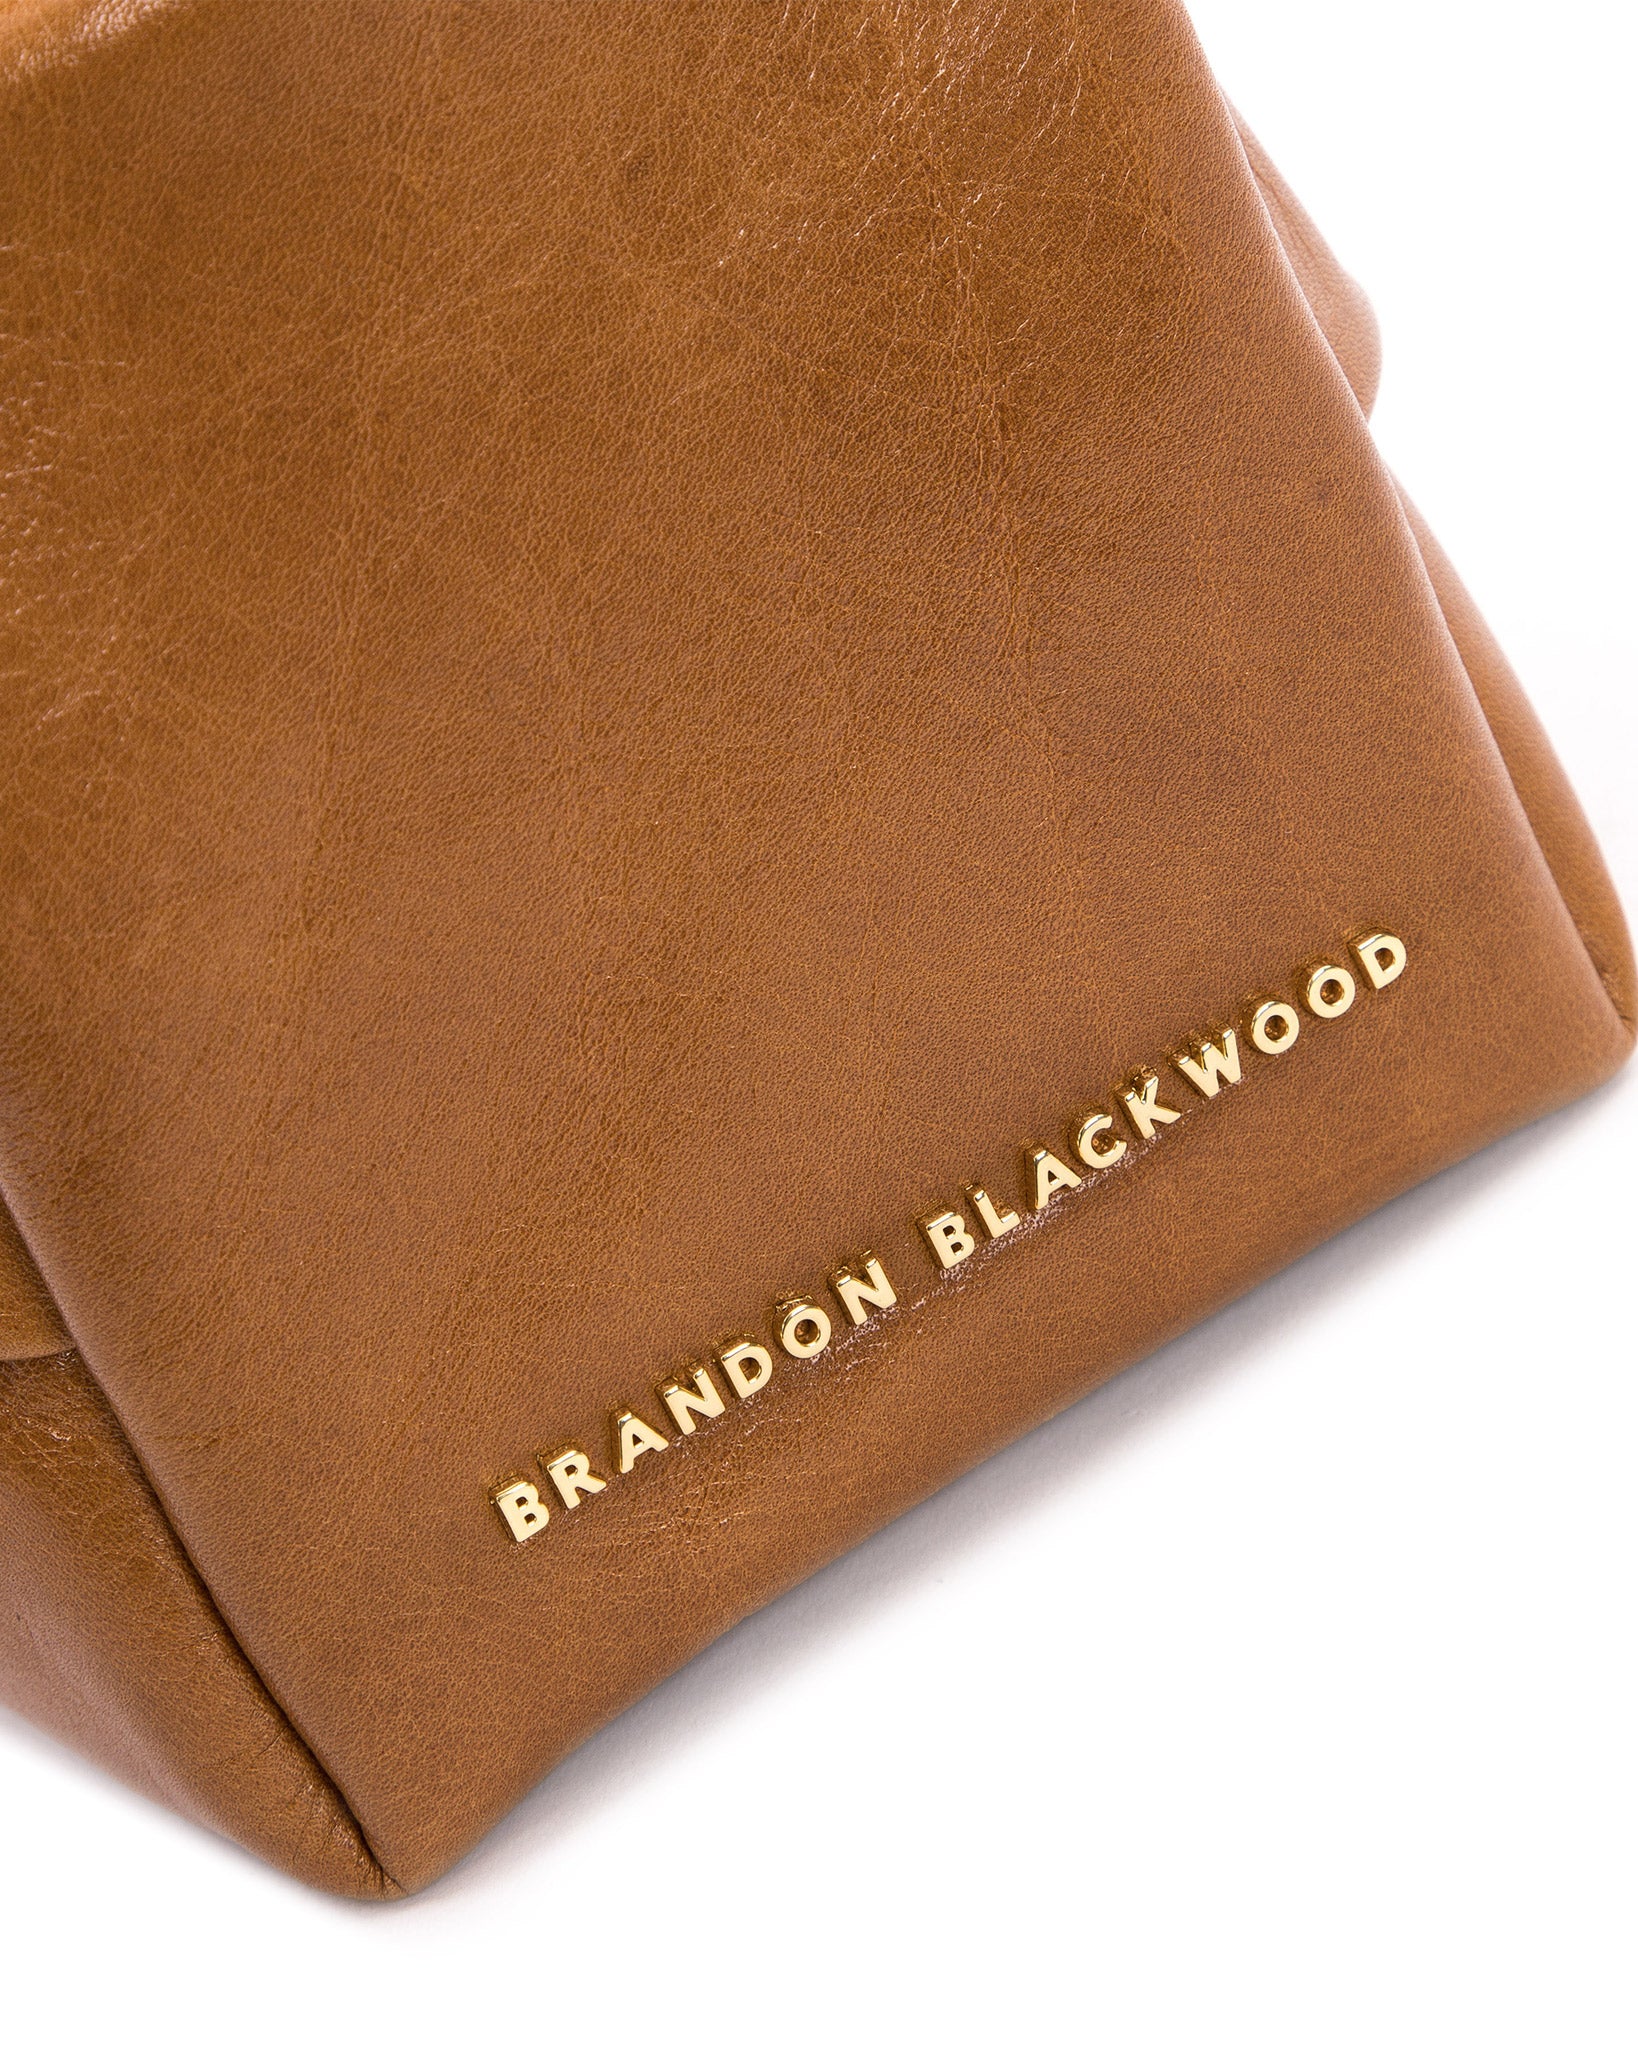 Brandon Blackwood Valentia Denim Shoulder Bag